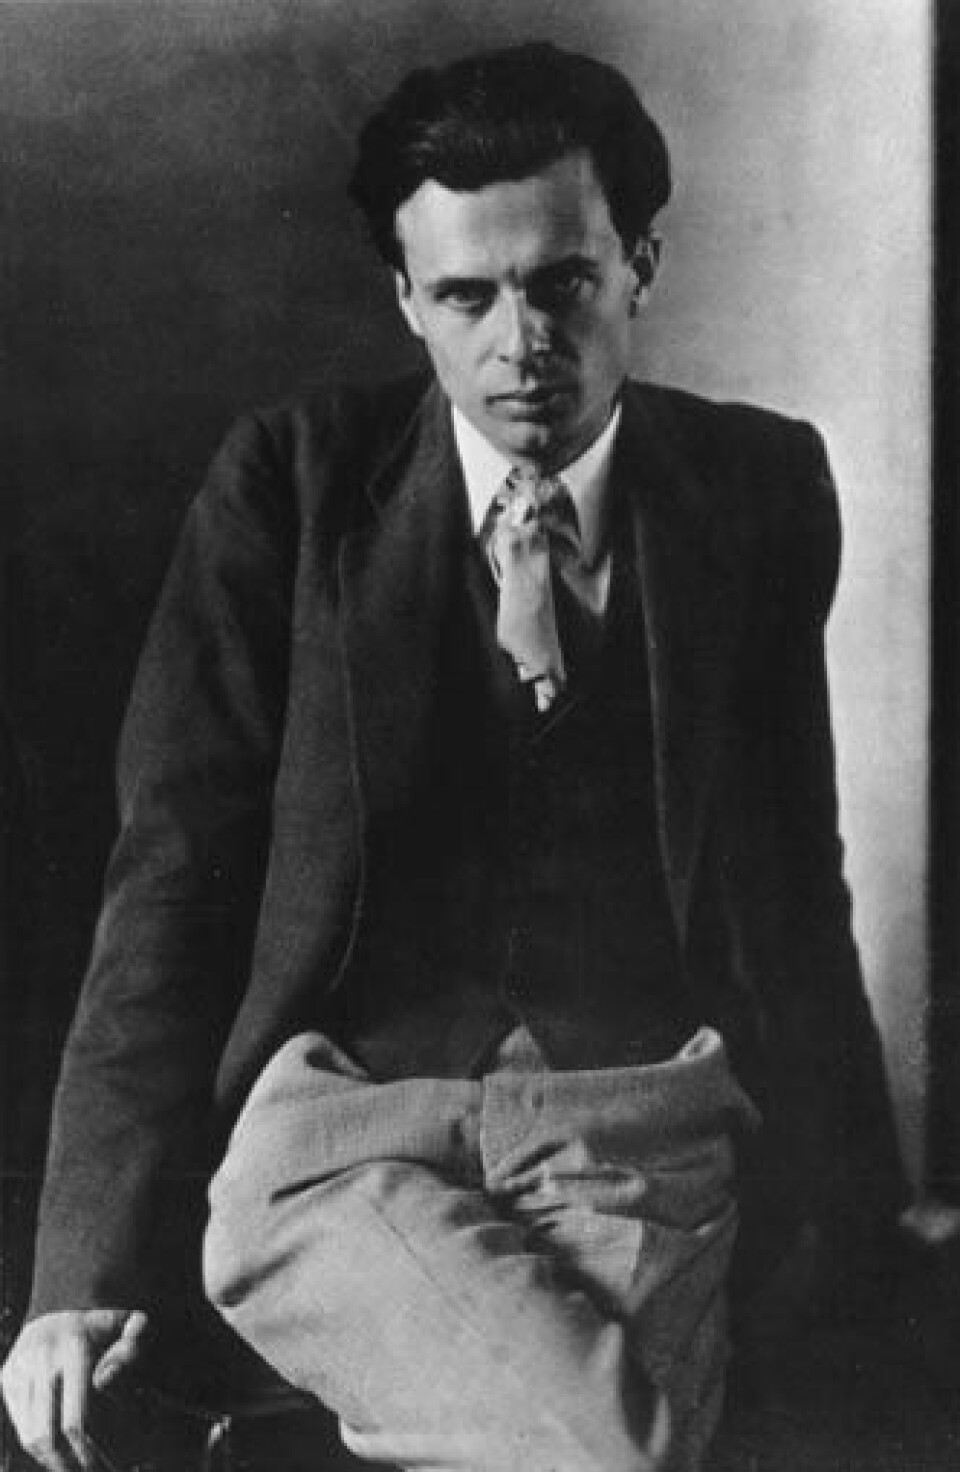 'Aldous Huxley, forfatter som eksperimenterte med meskalin.'